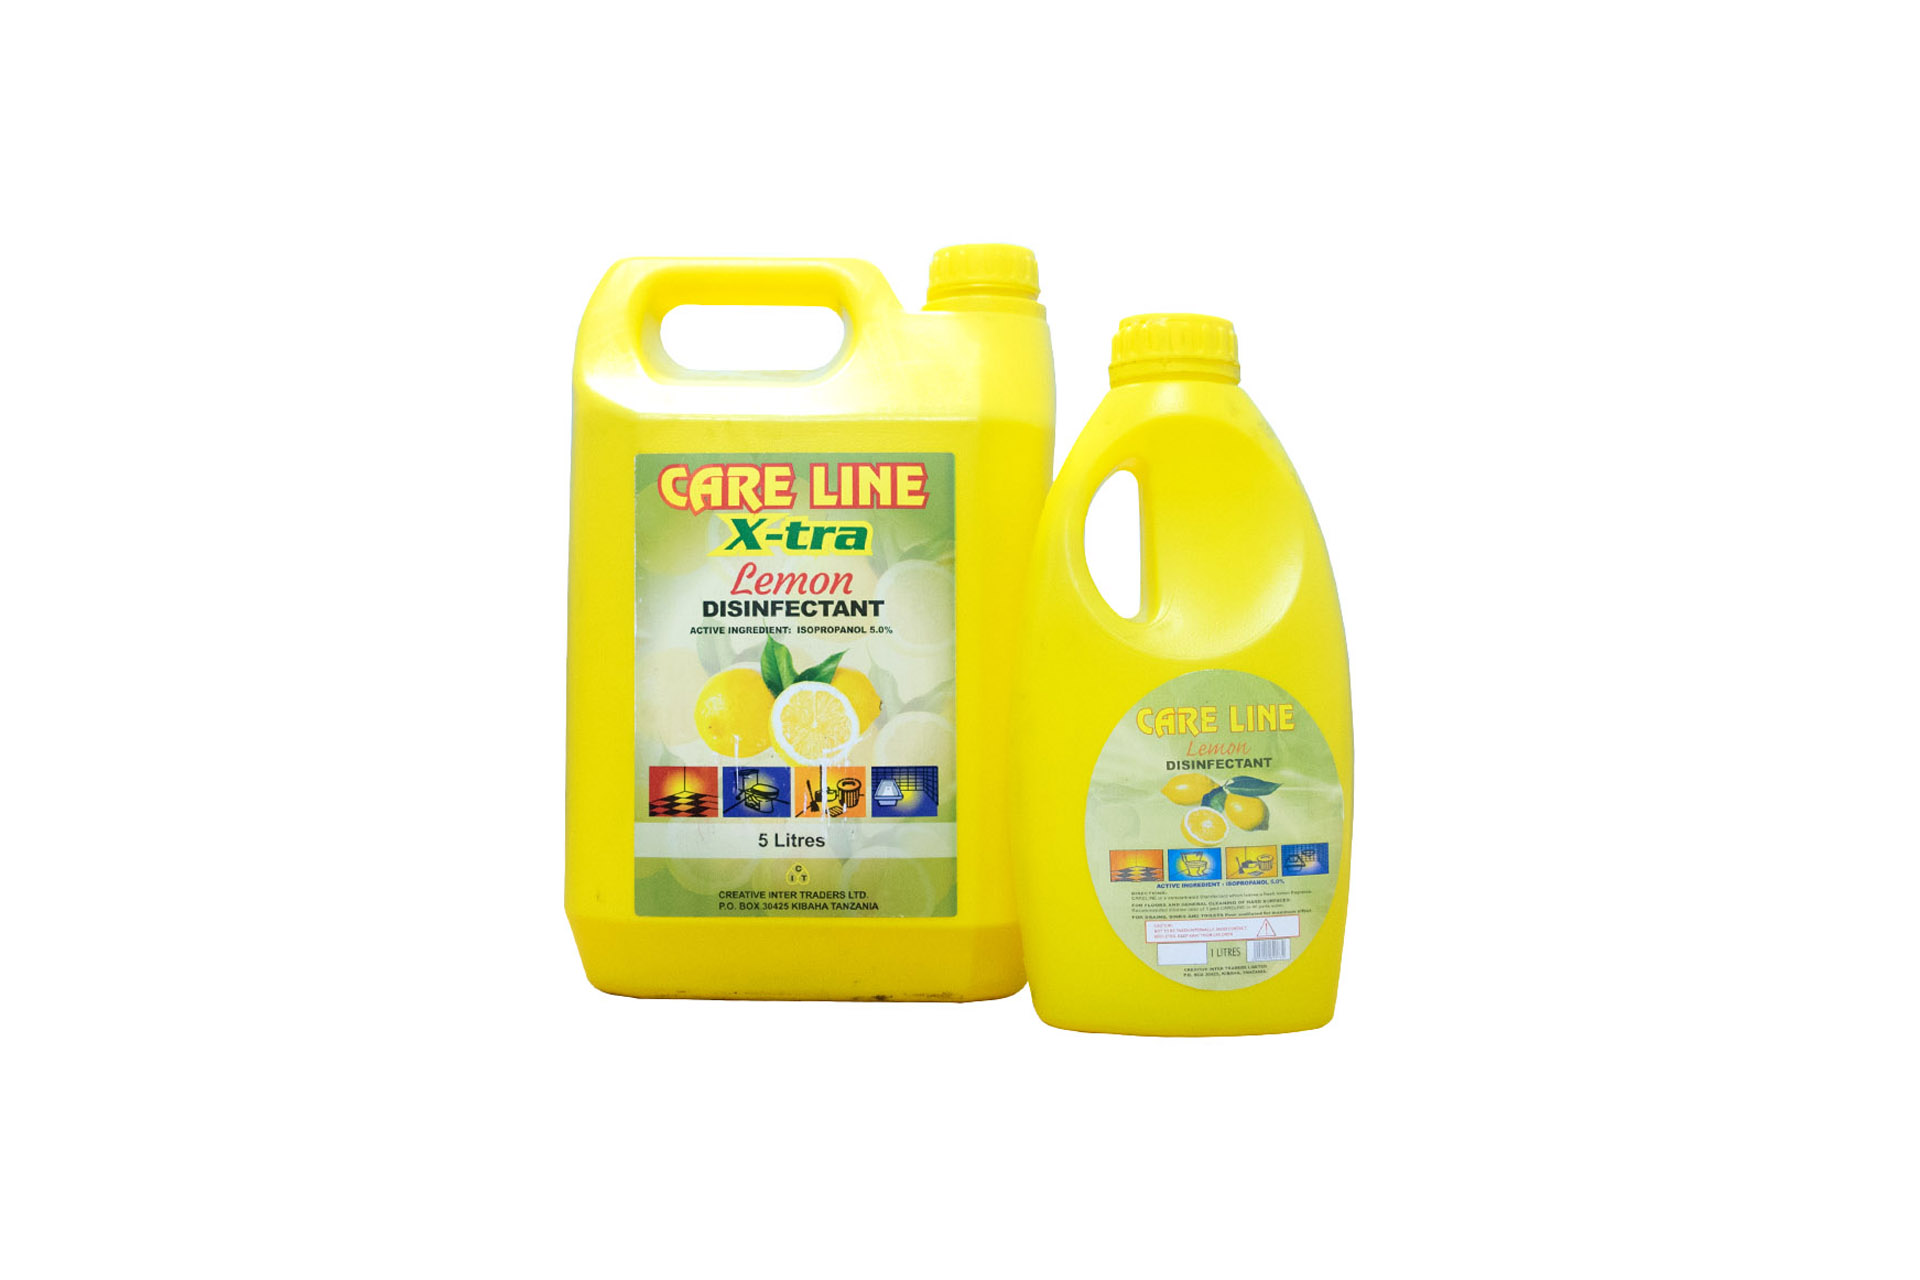 CareLine – Xtra Lemon (Disinfectant)